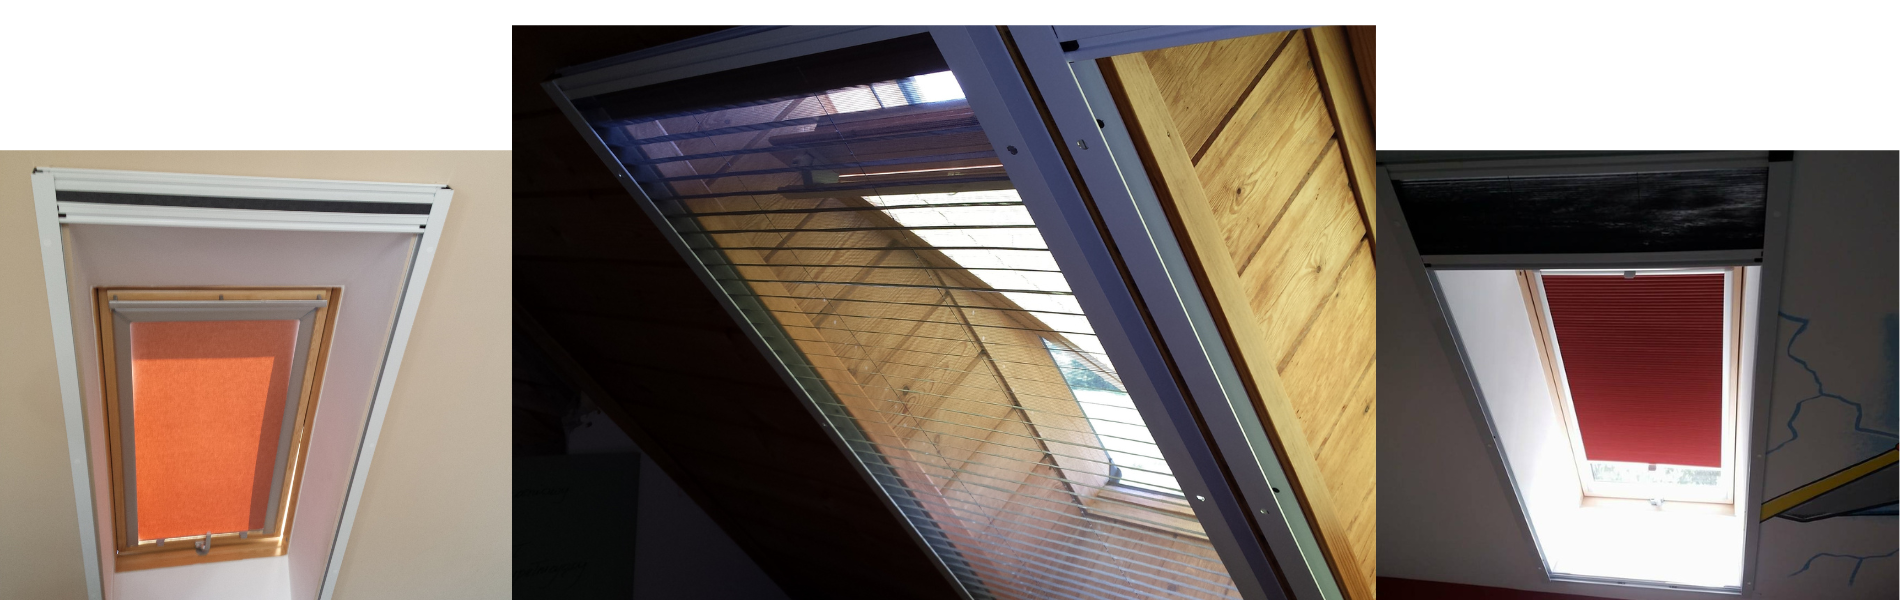 Zdjęcie prezentuje eleganckie i funkcjonalne moskitiery zainstalowane na oknach dachowych w Łodzi. Moskitiery te nie tylko chronią przed owadami, ale również pozwalają na swobodny przepływ powietrza i światła do wnętrza, zapewniając komfort i wygodę mieszkańcom. Idealne rozwiązanie dla każdego domu w Łodzi, które chce łączyć funkcjonalność z estetyką.